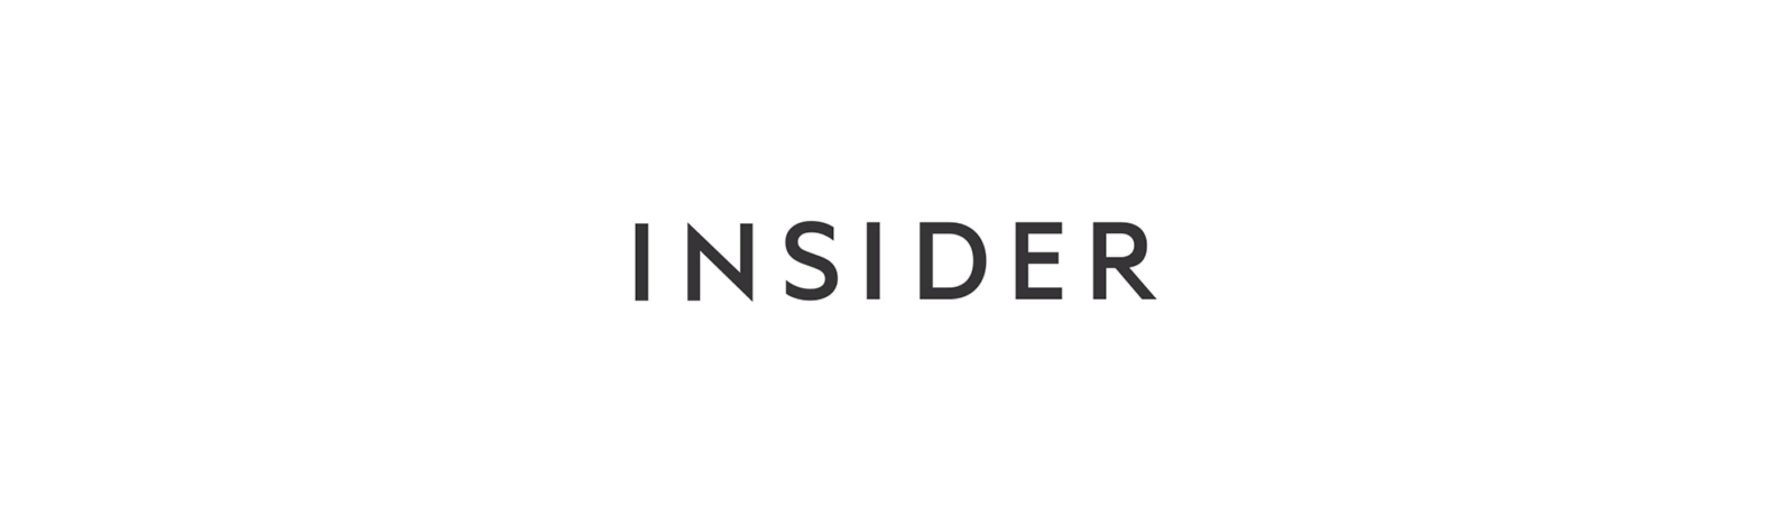  INSIDER logo